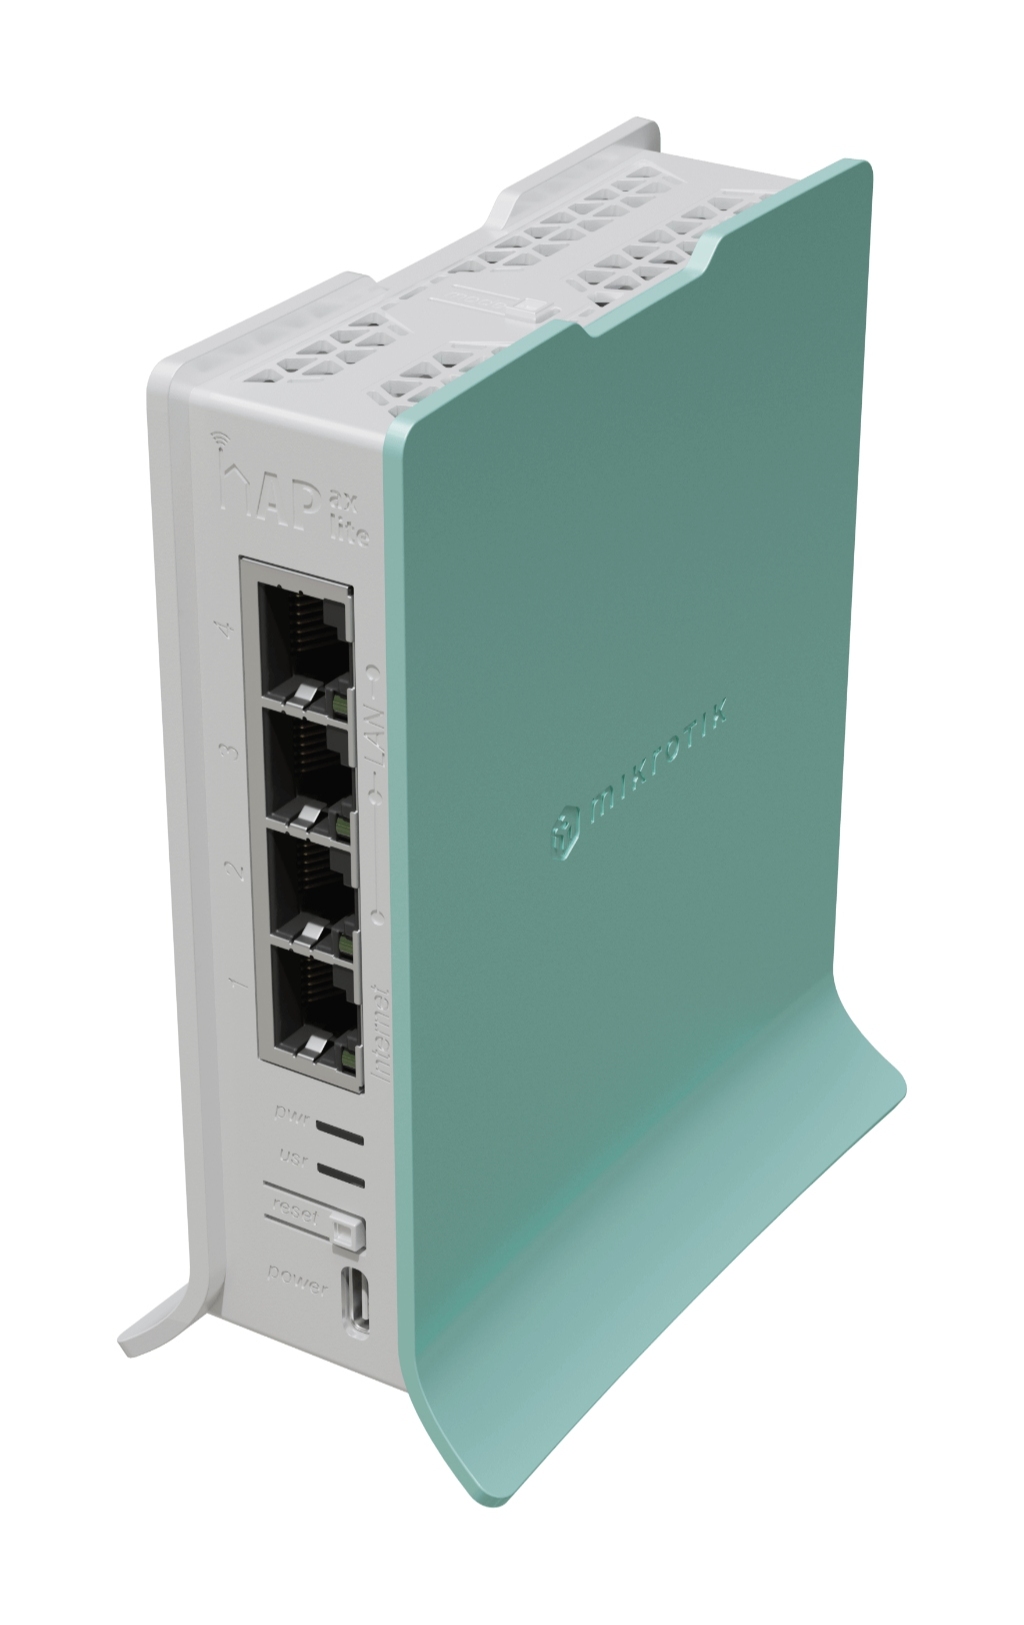 L41G-2axD-MikroTik hAP ax lite - L41G-2axD 2.4GHz WiFi6 AP Firewall Router